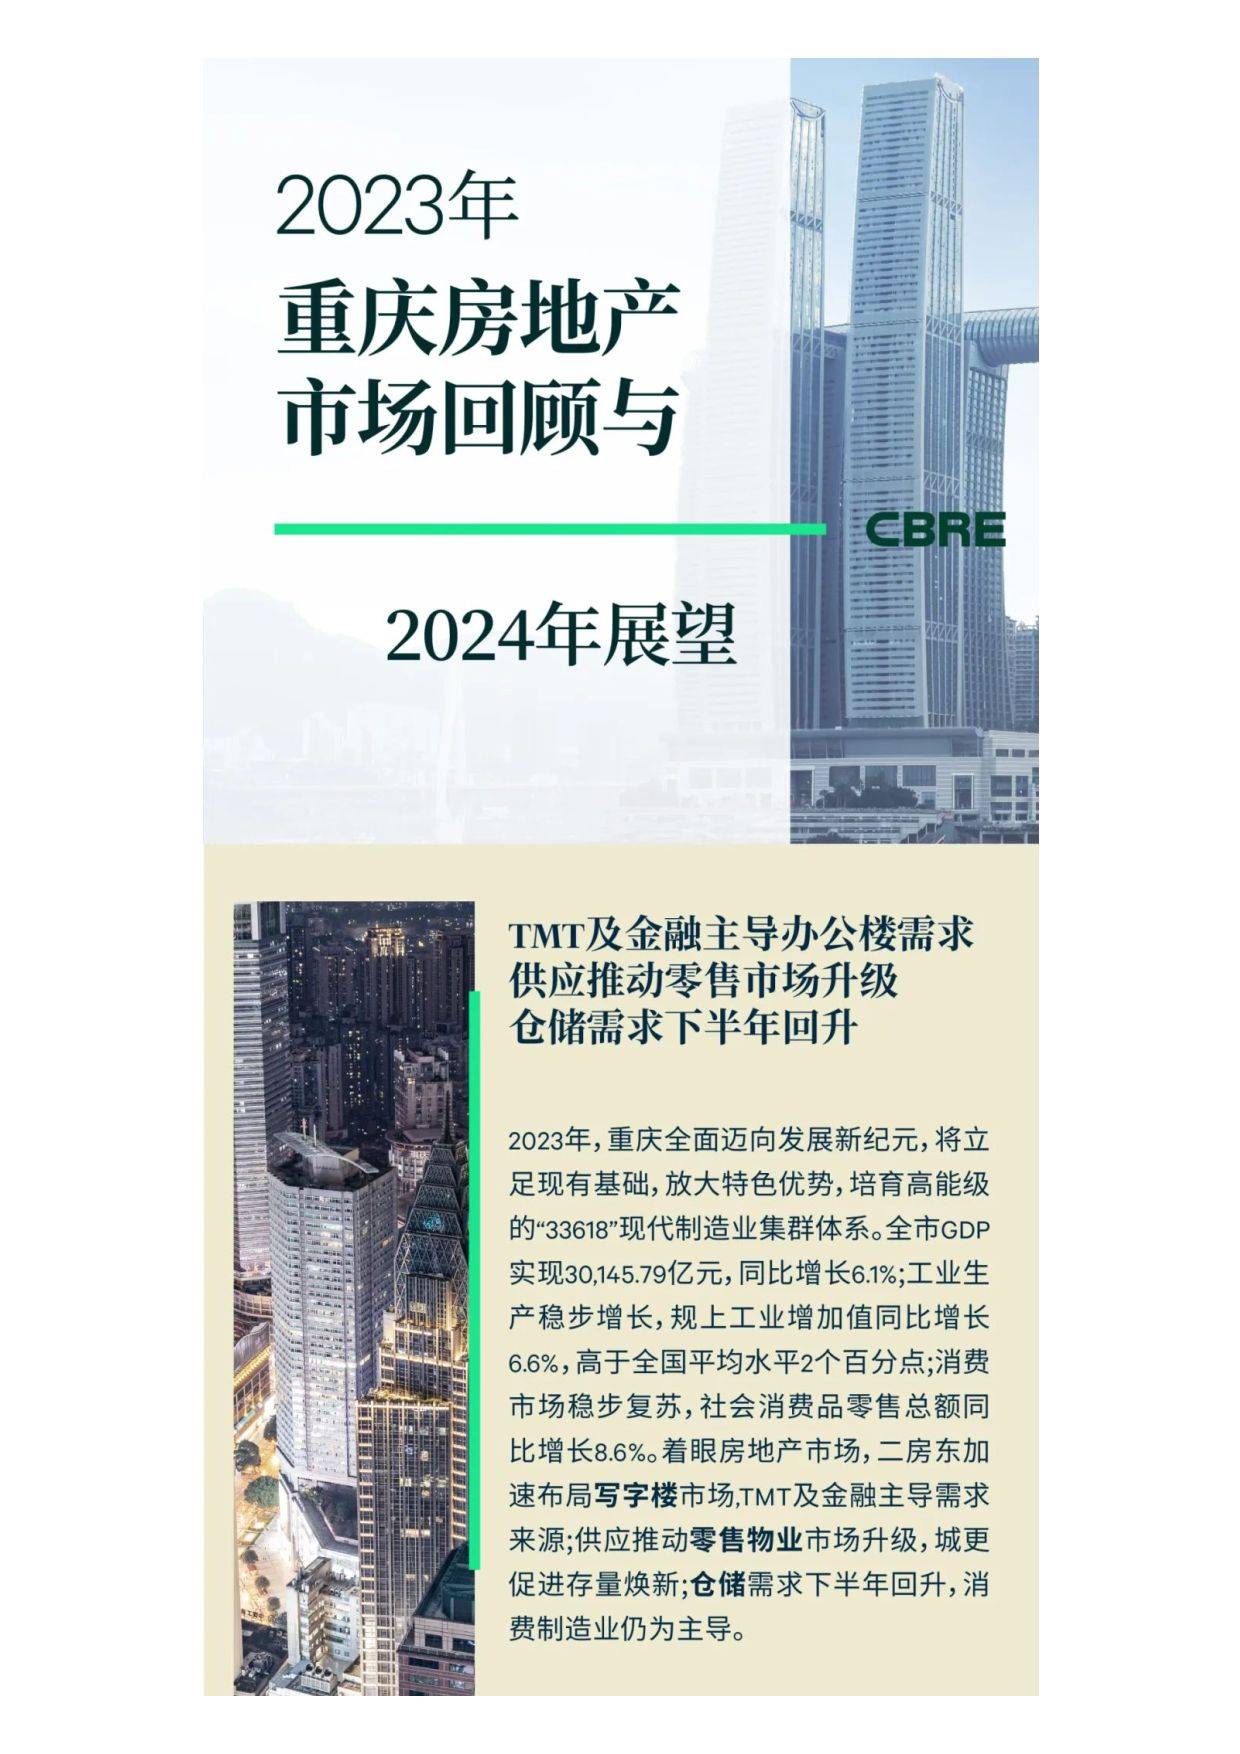 2023年重庆房地产市场回顾与2024年展望(附下载方式)